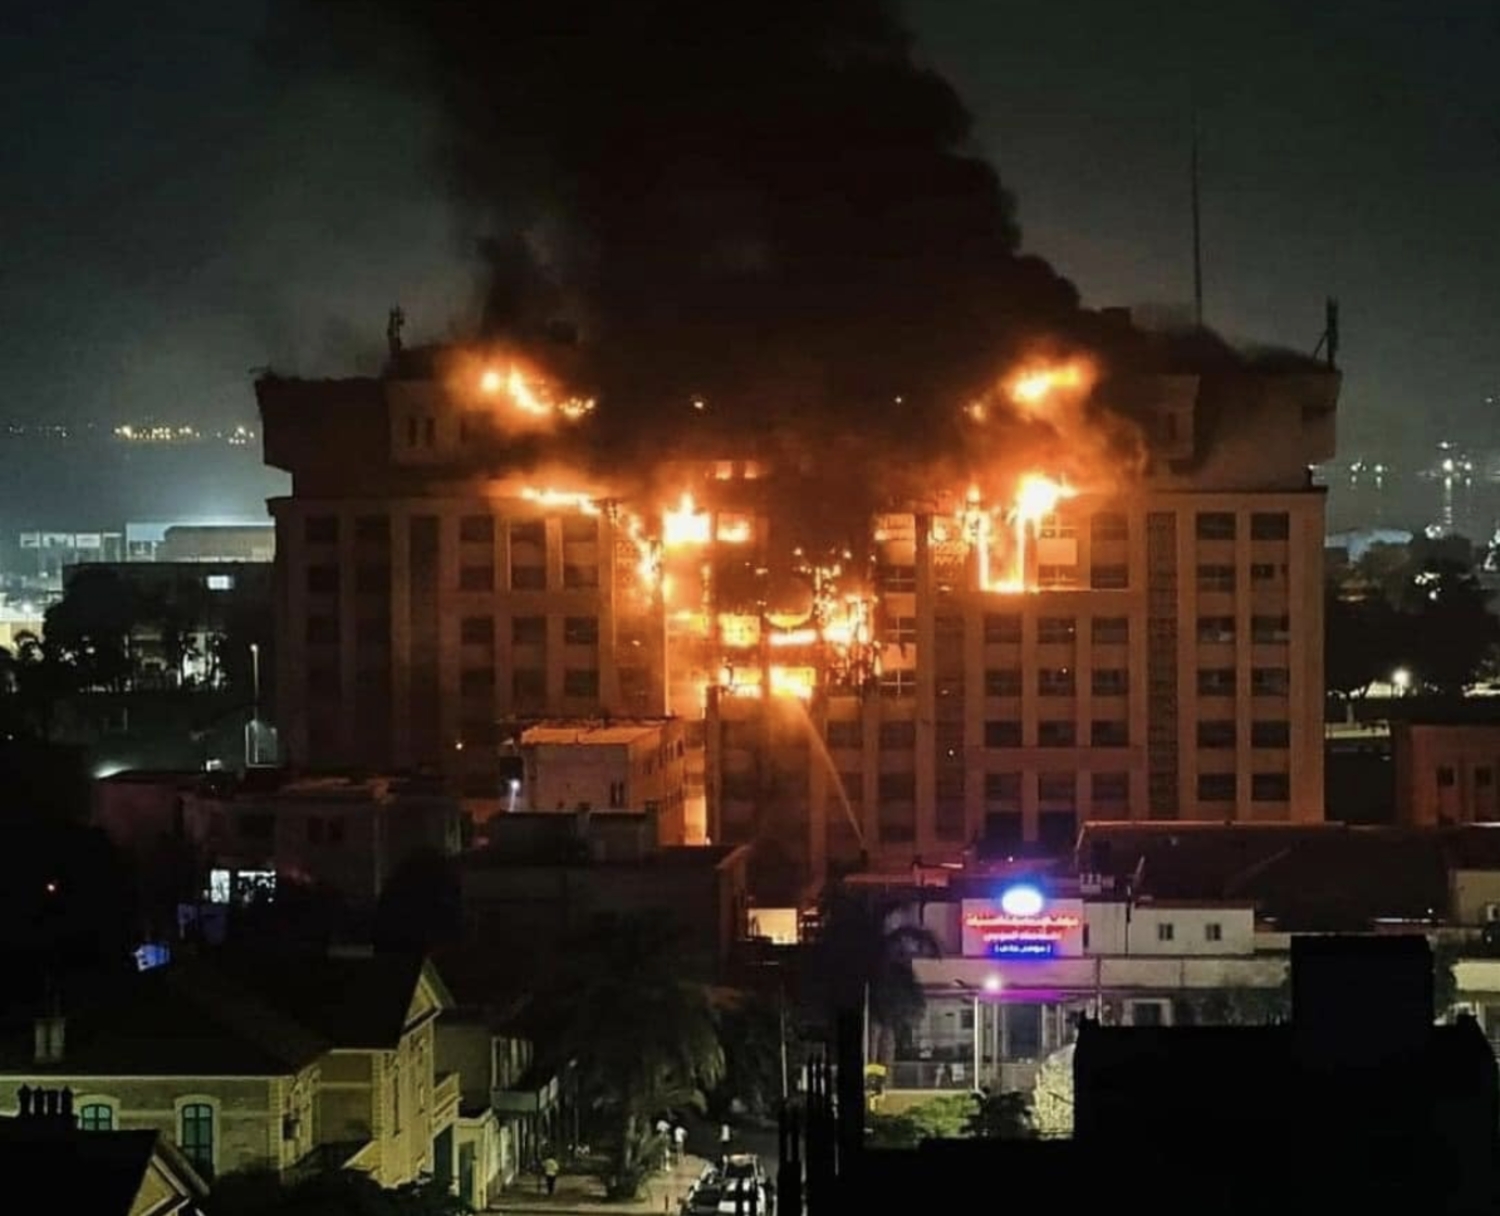 حريق ضخم يلتهم مديرية أمن الإسماعيلية في مصر